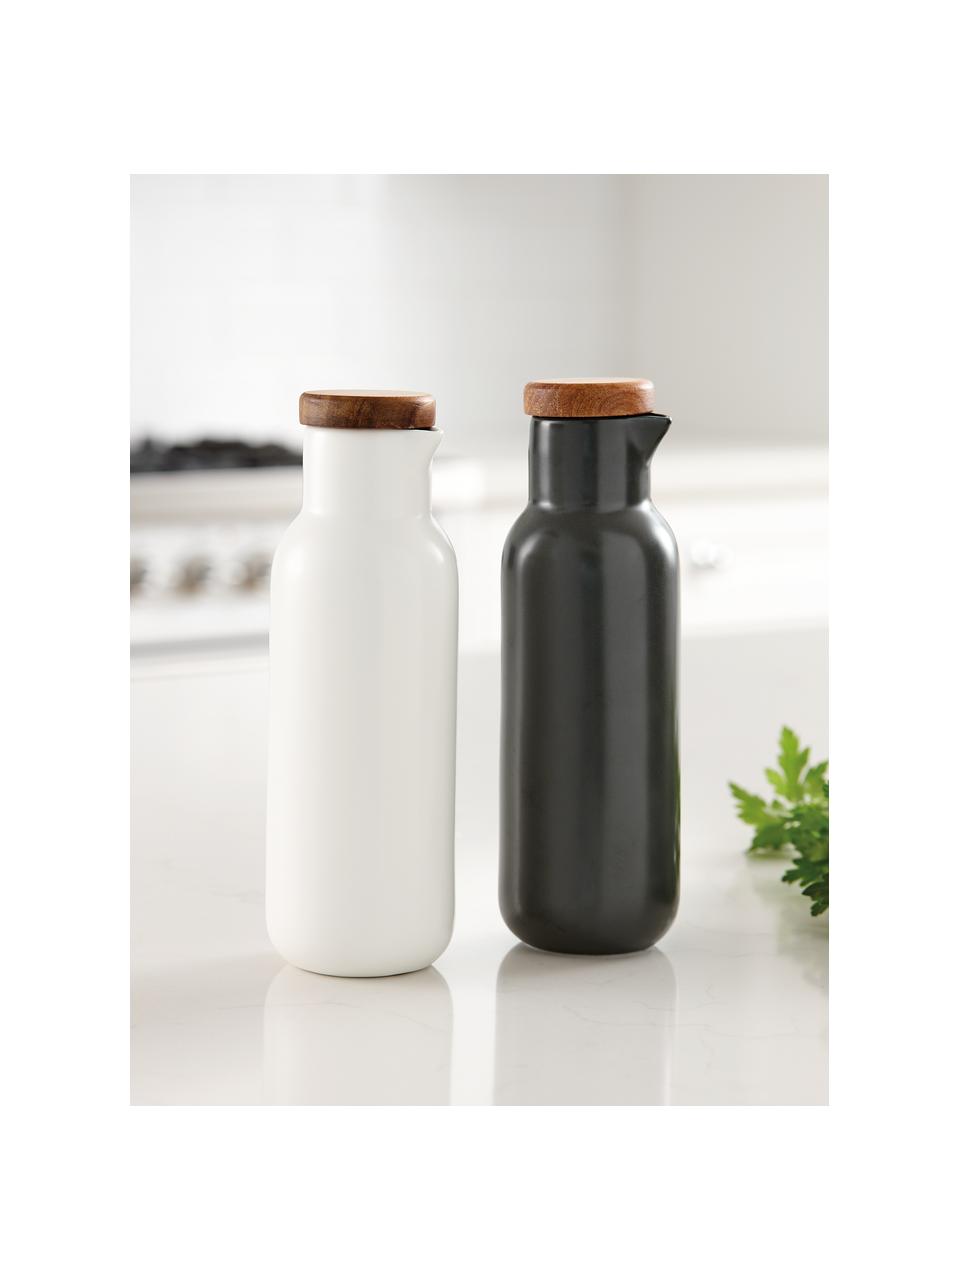 Essig- und Öl-Spender Essentials aus Porzellan und Akazienholz, 2er-Set, Weiß, Anthrazit, Ø 6 x H 18 cm